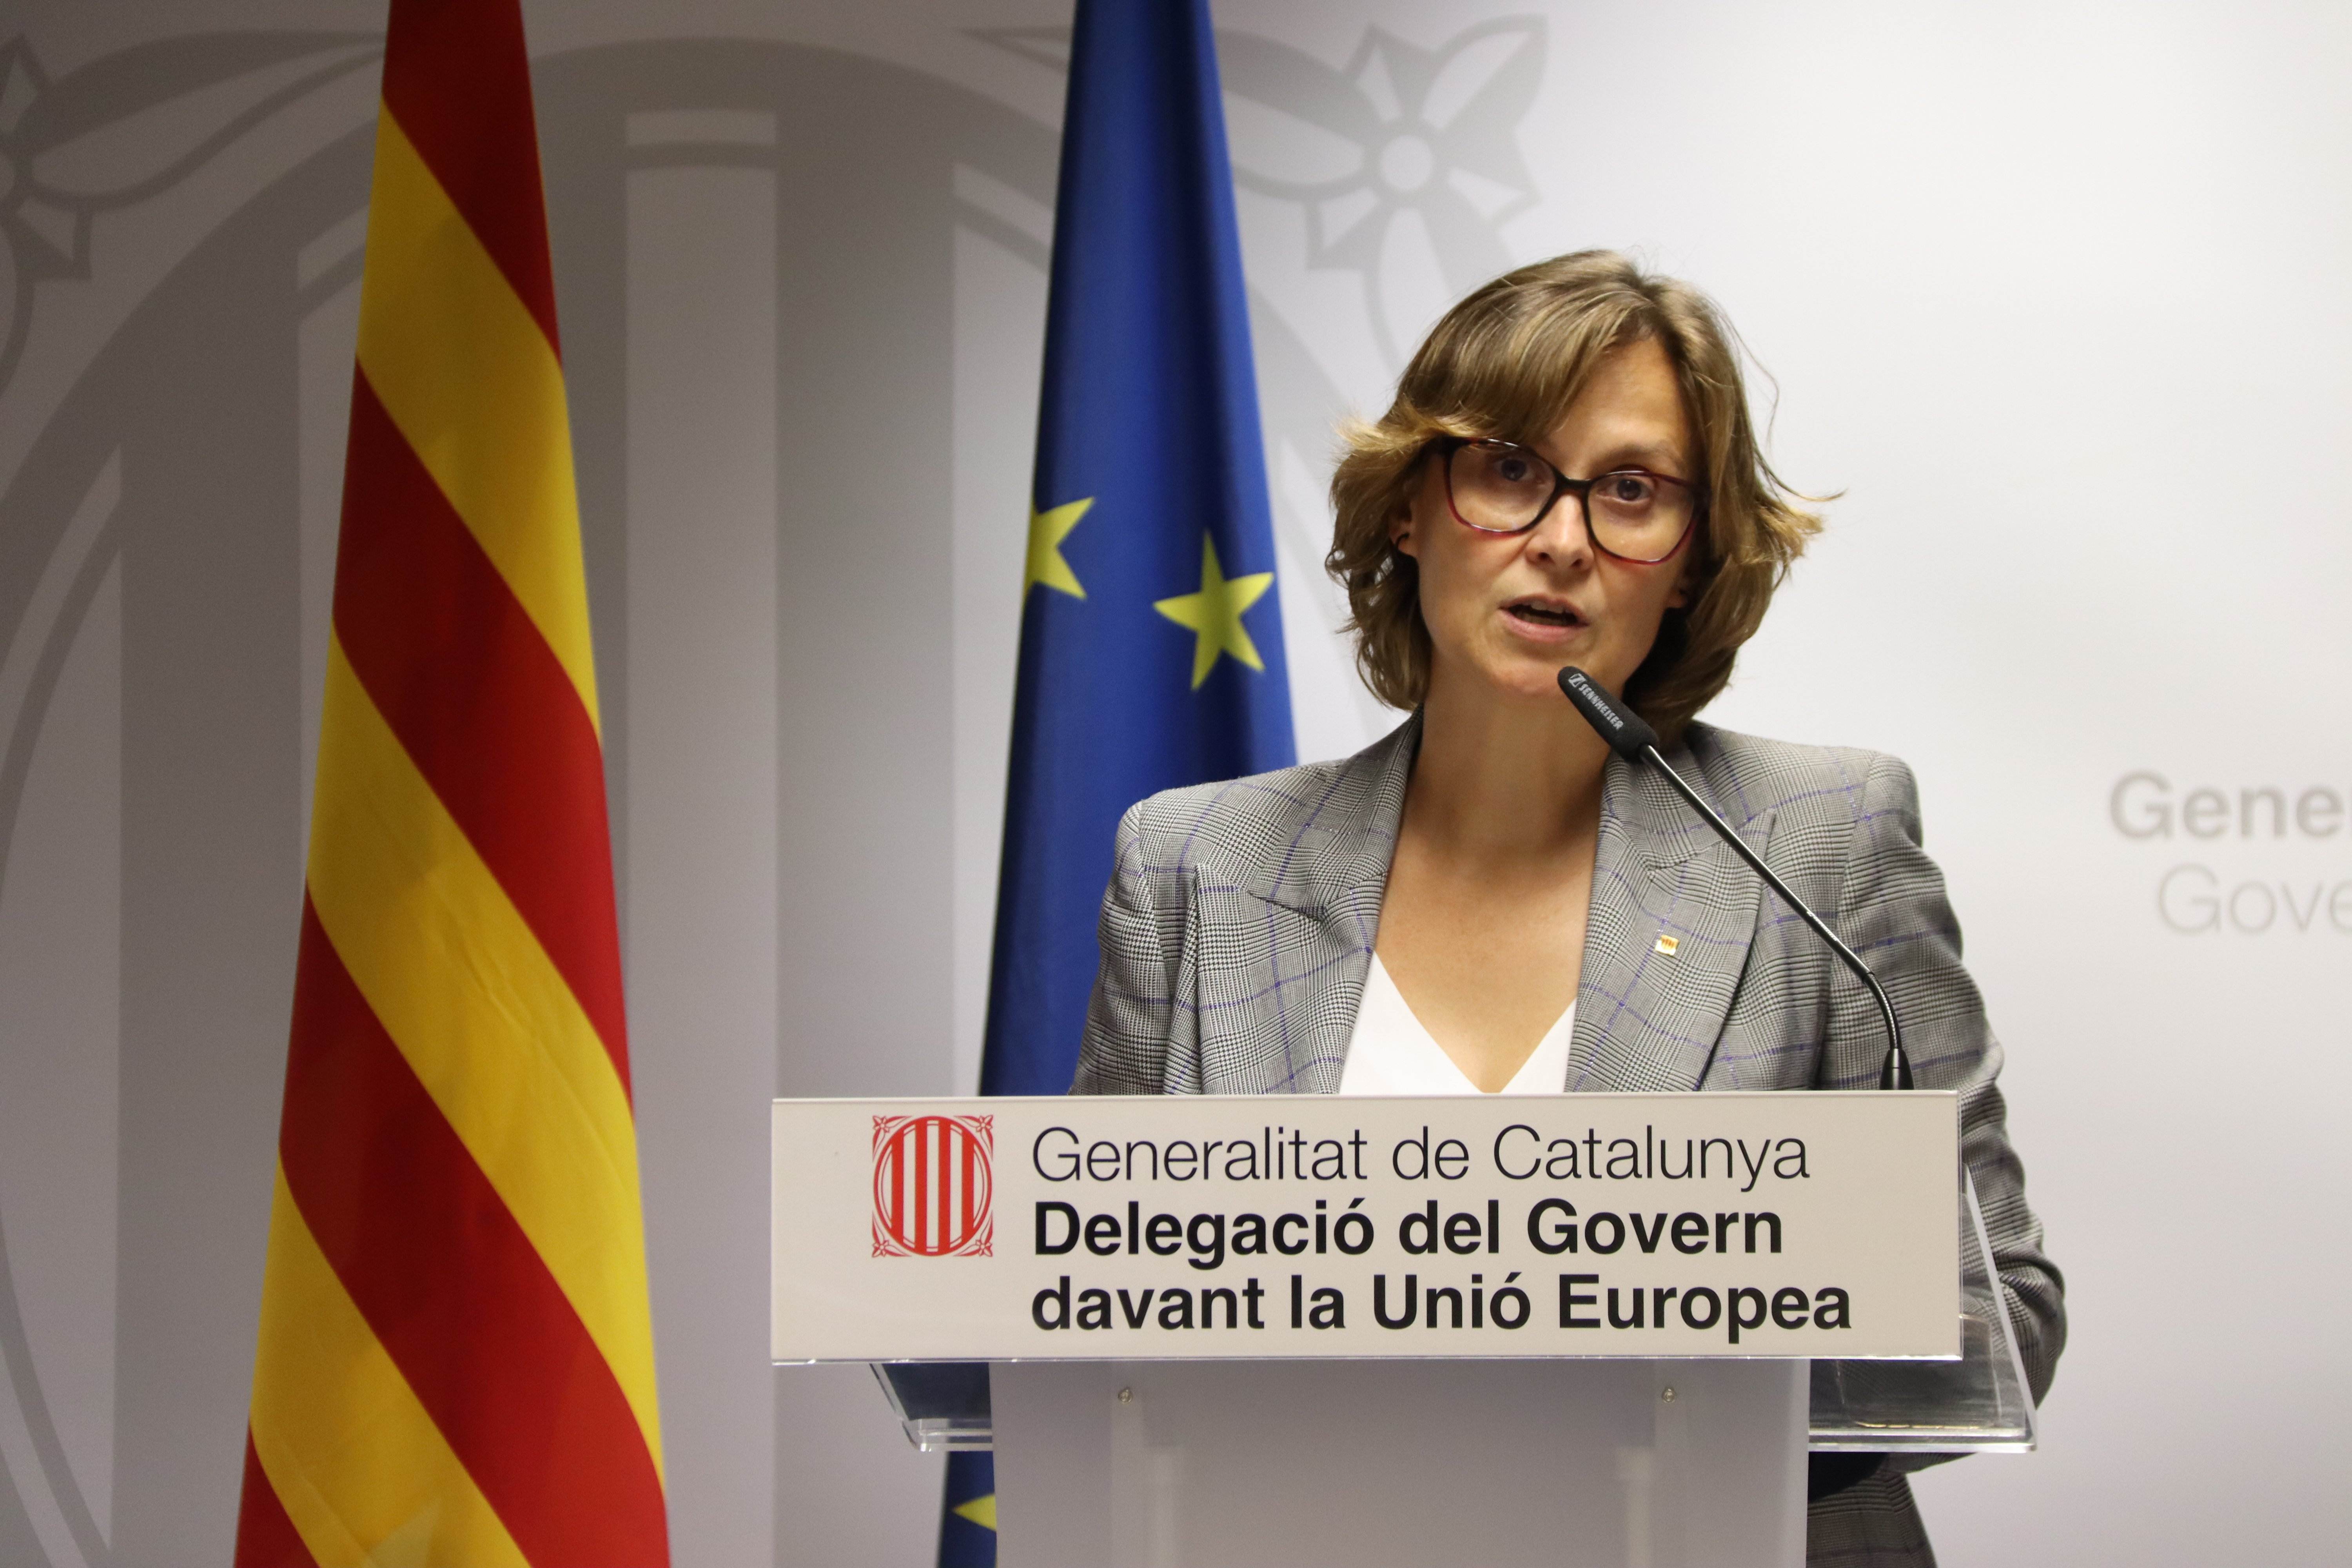 El Govern admet "preocupació" per la patinada d'Espanya amb el català a la UE